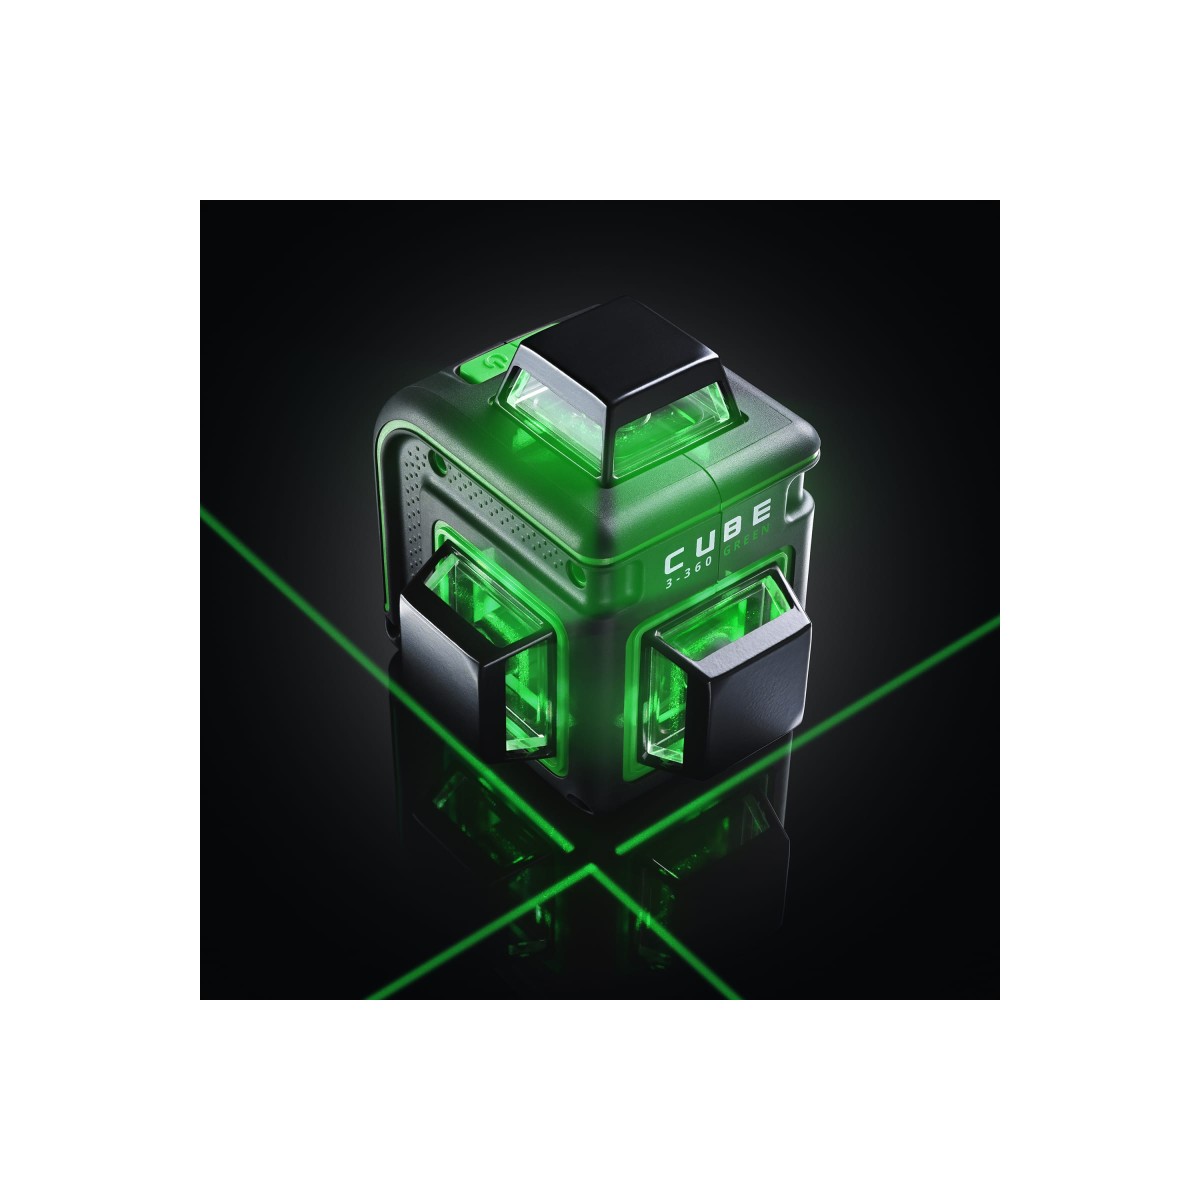 Cube 360 ultimate edition. Ada Cube 3-360 Green. Лазерный уровень ada Cube 3-360 Basic Edition. Ada Cube 2-360 Green. Лазерный уровень Cube 3 сломанный.